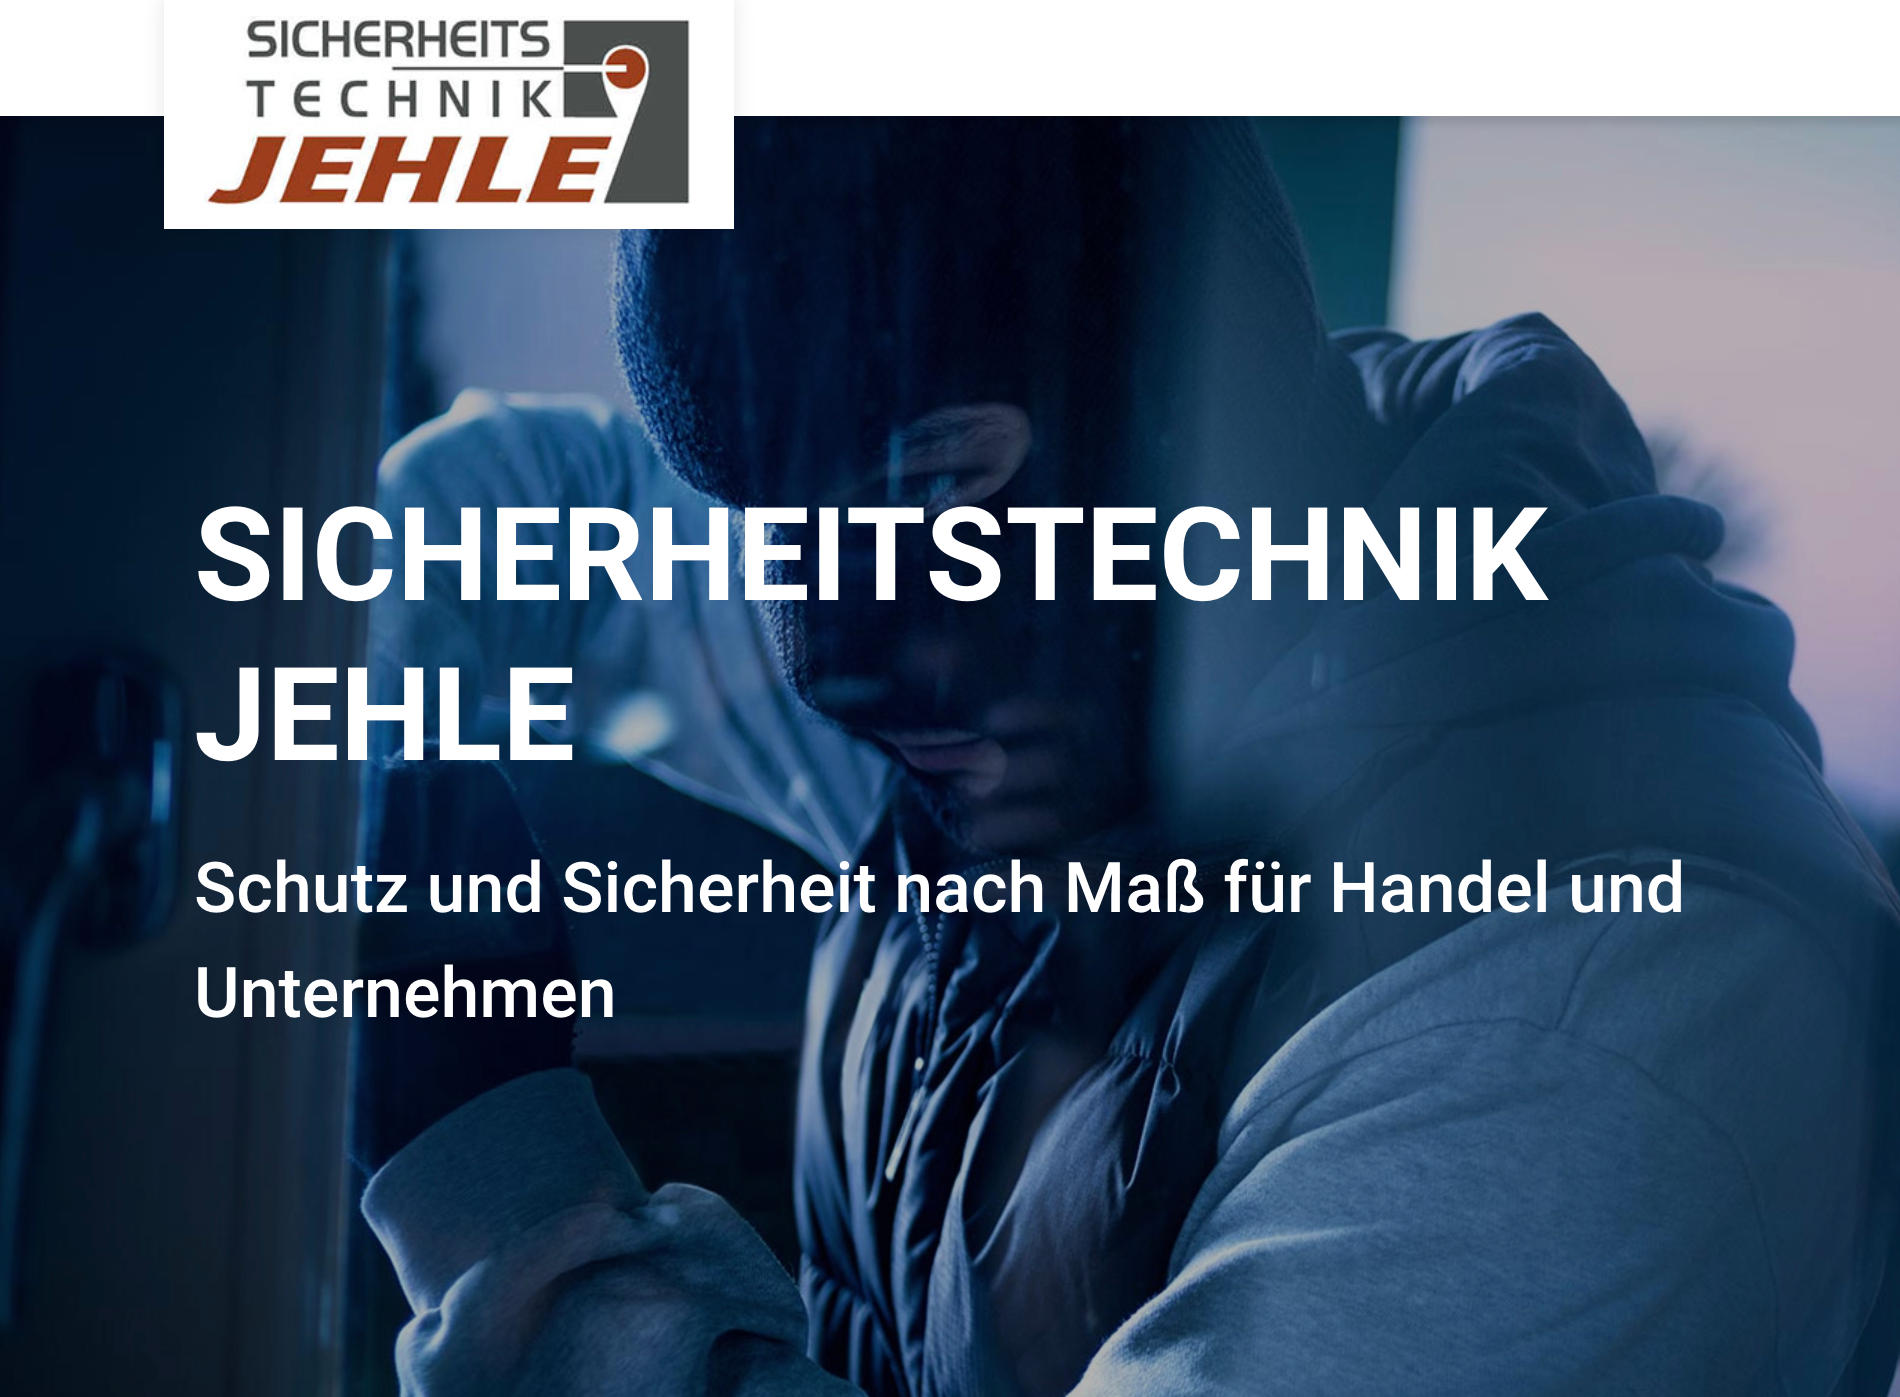 Kundenbild groß 1 Sicherheitstechnik Jehle | Sicherheits- und Kommunikationslösungen | München